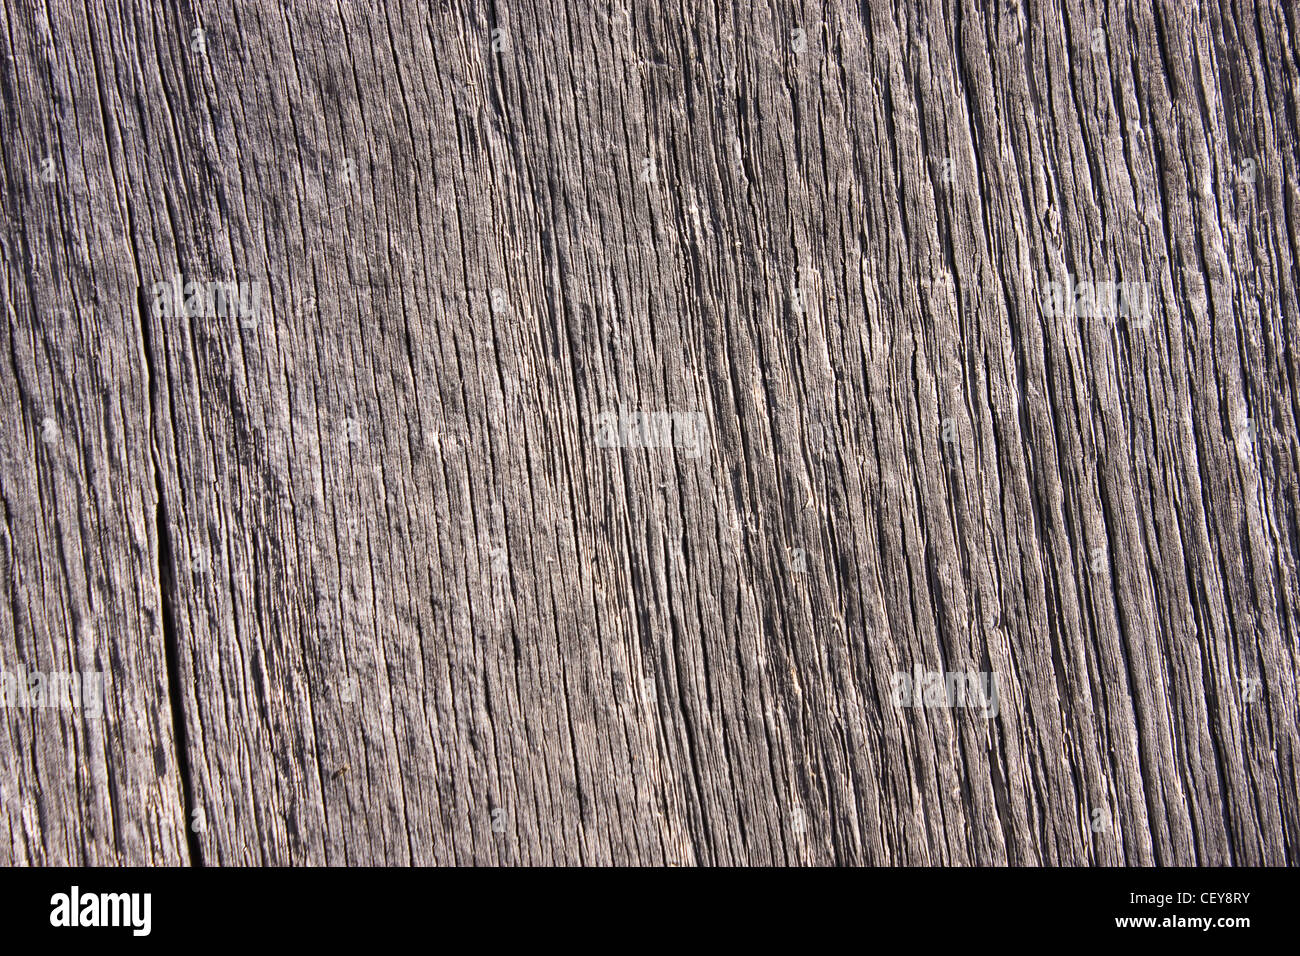 La textura de un tablón de madera, detalles visibles Foto de stock